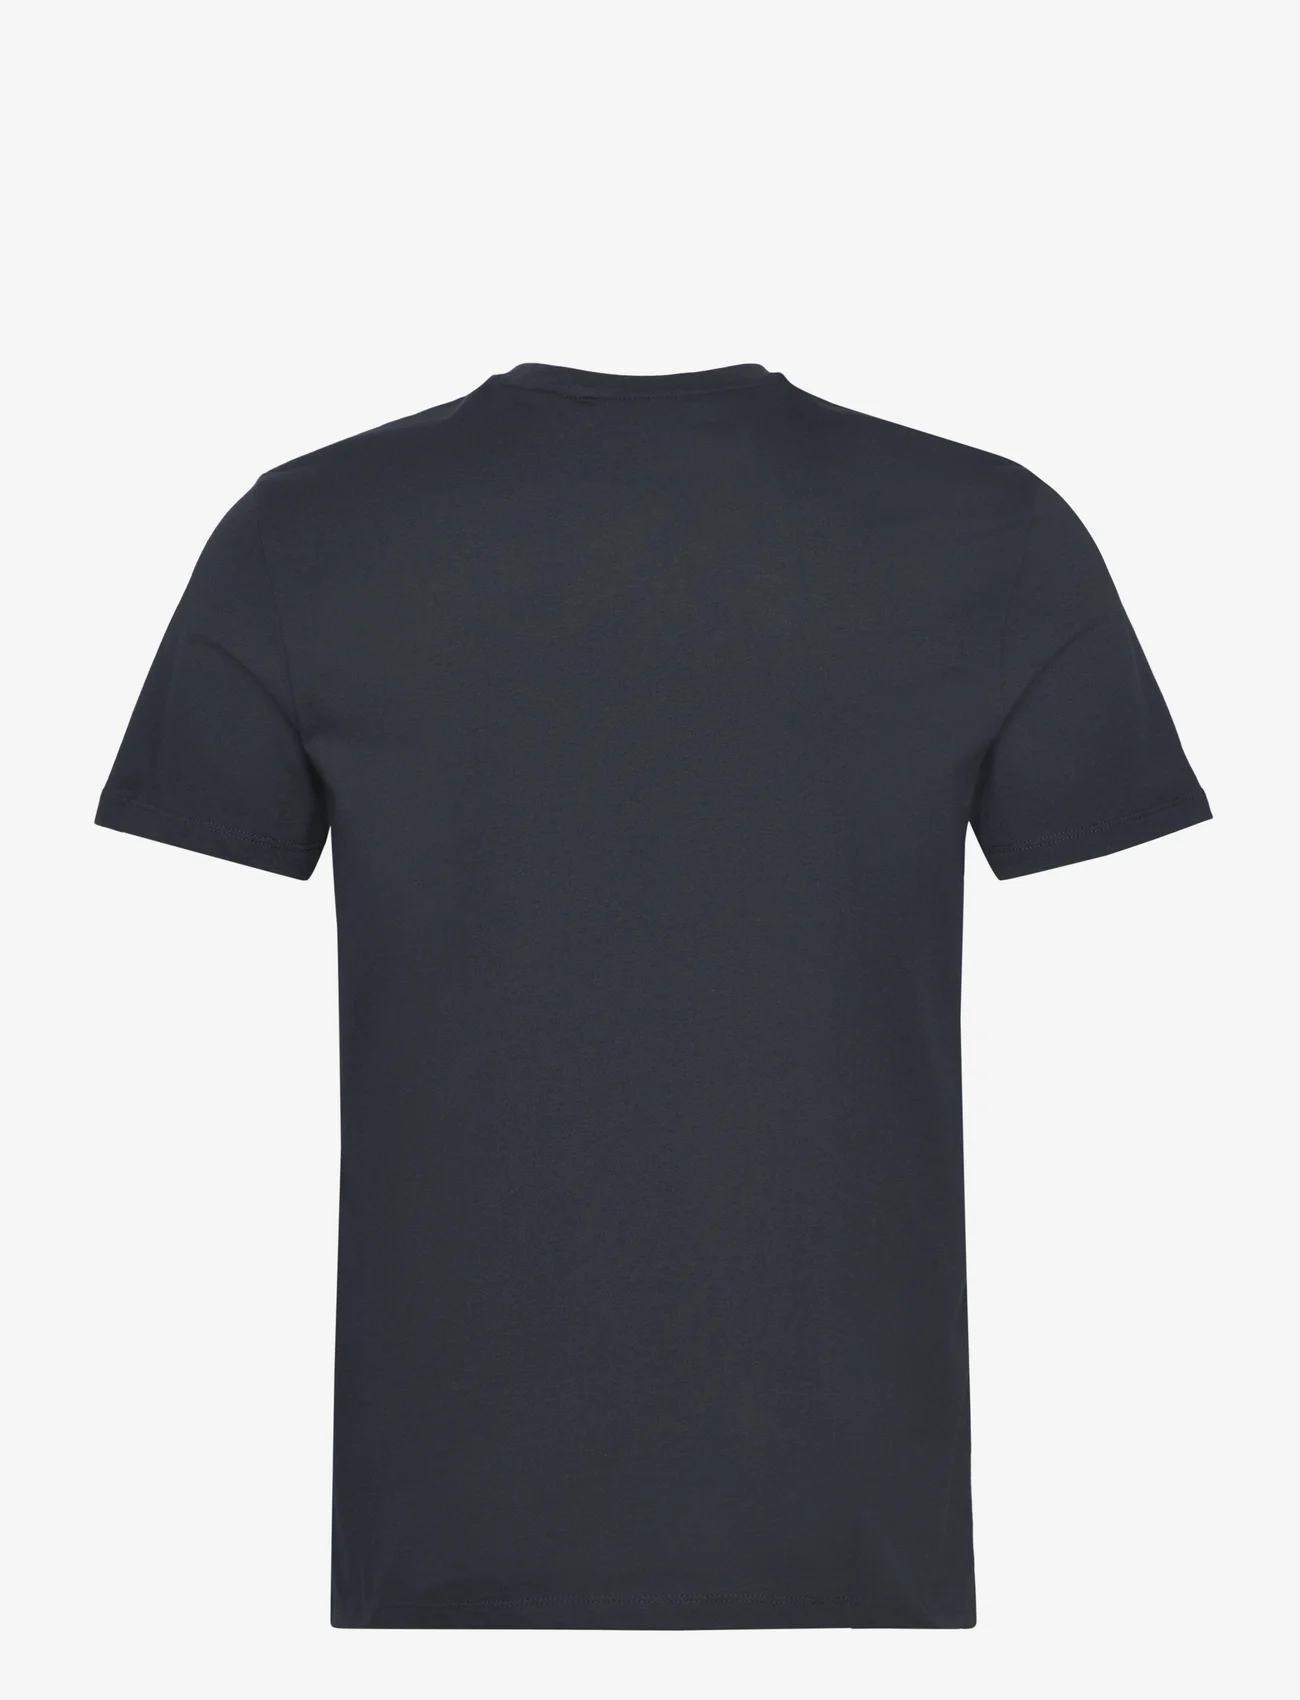 Lyle & Scott - Floral Print Pocket T-Shirt - laagste prijzen - z271 dark navy - 1